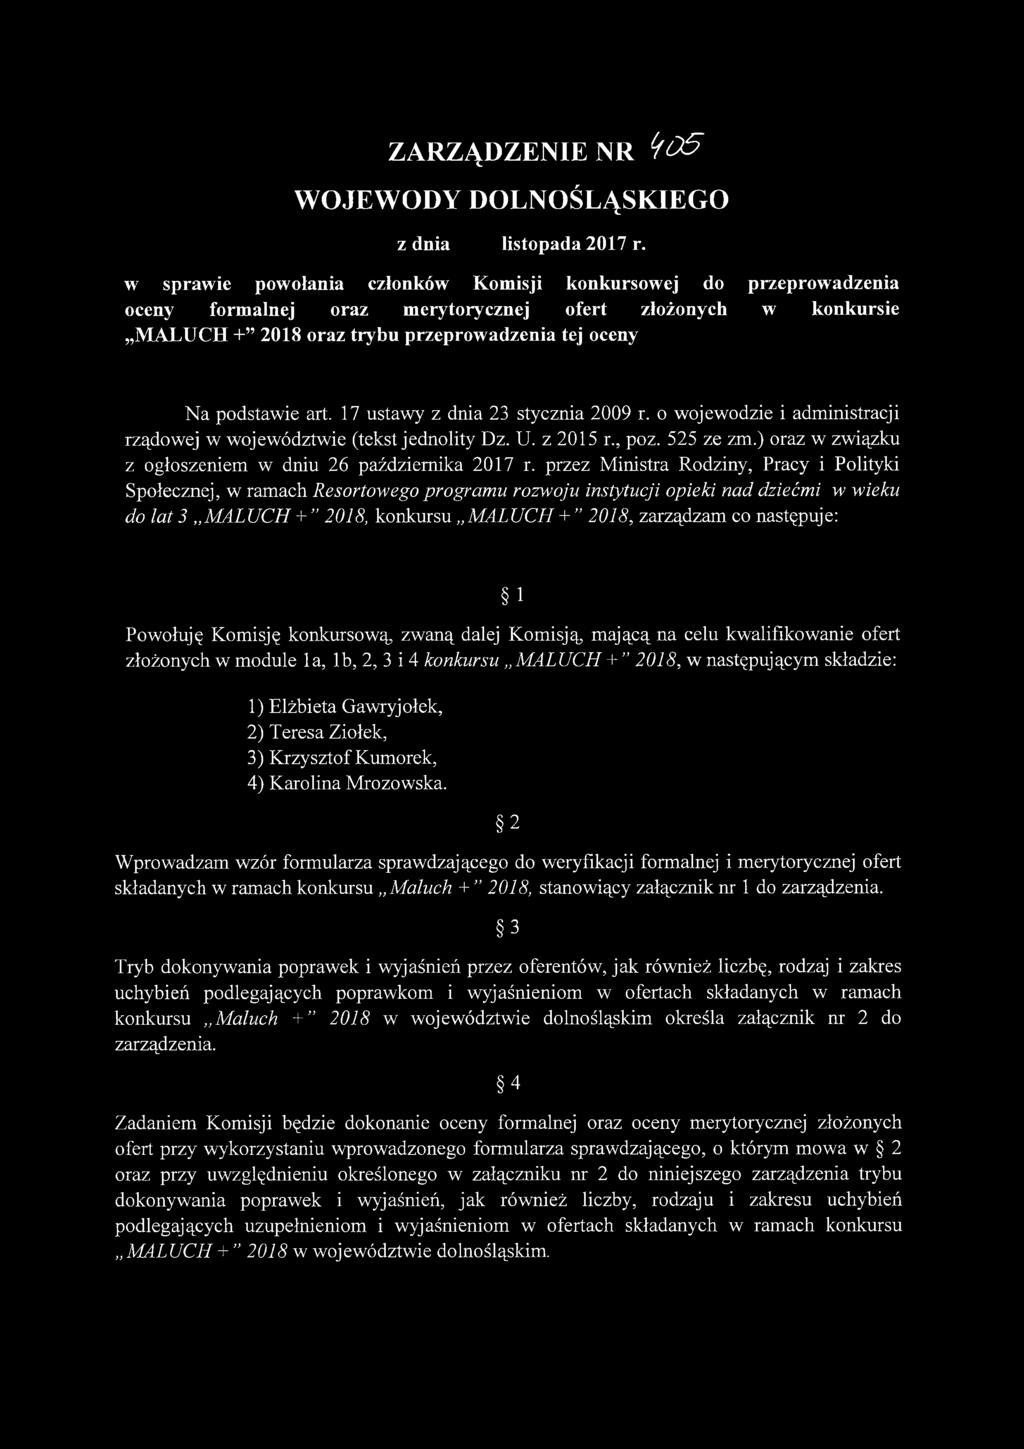 17 ustawy z dnia 23 stycznia 2009 r. o wojewodzie i administracji rządowej w województwie (tekst jednolity Dz. U. z 2015 r., poz. 525 ze zm.